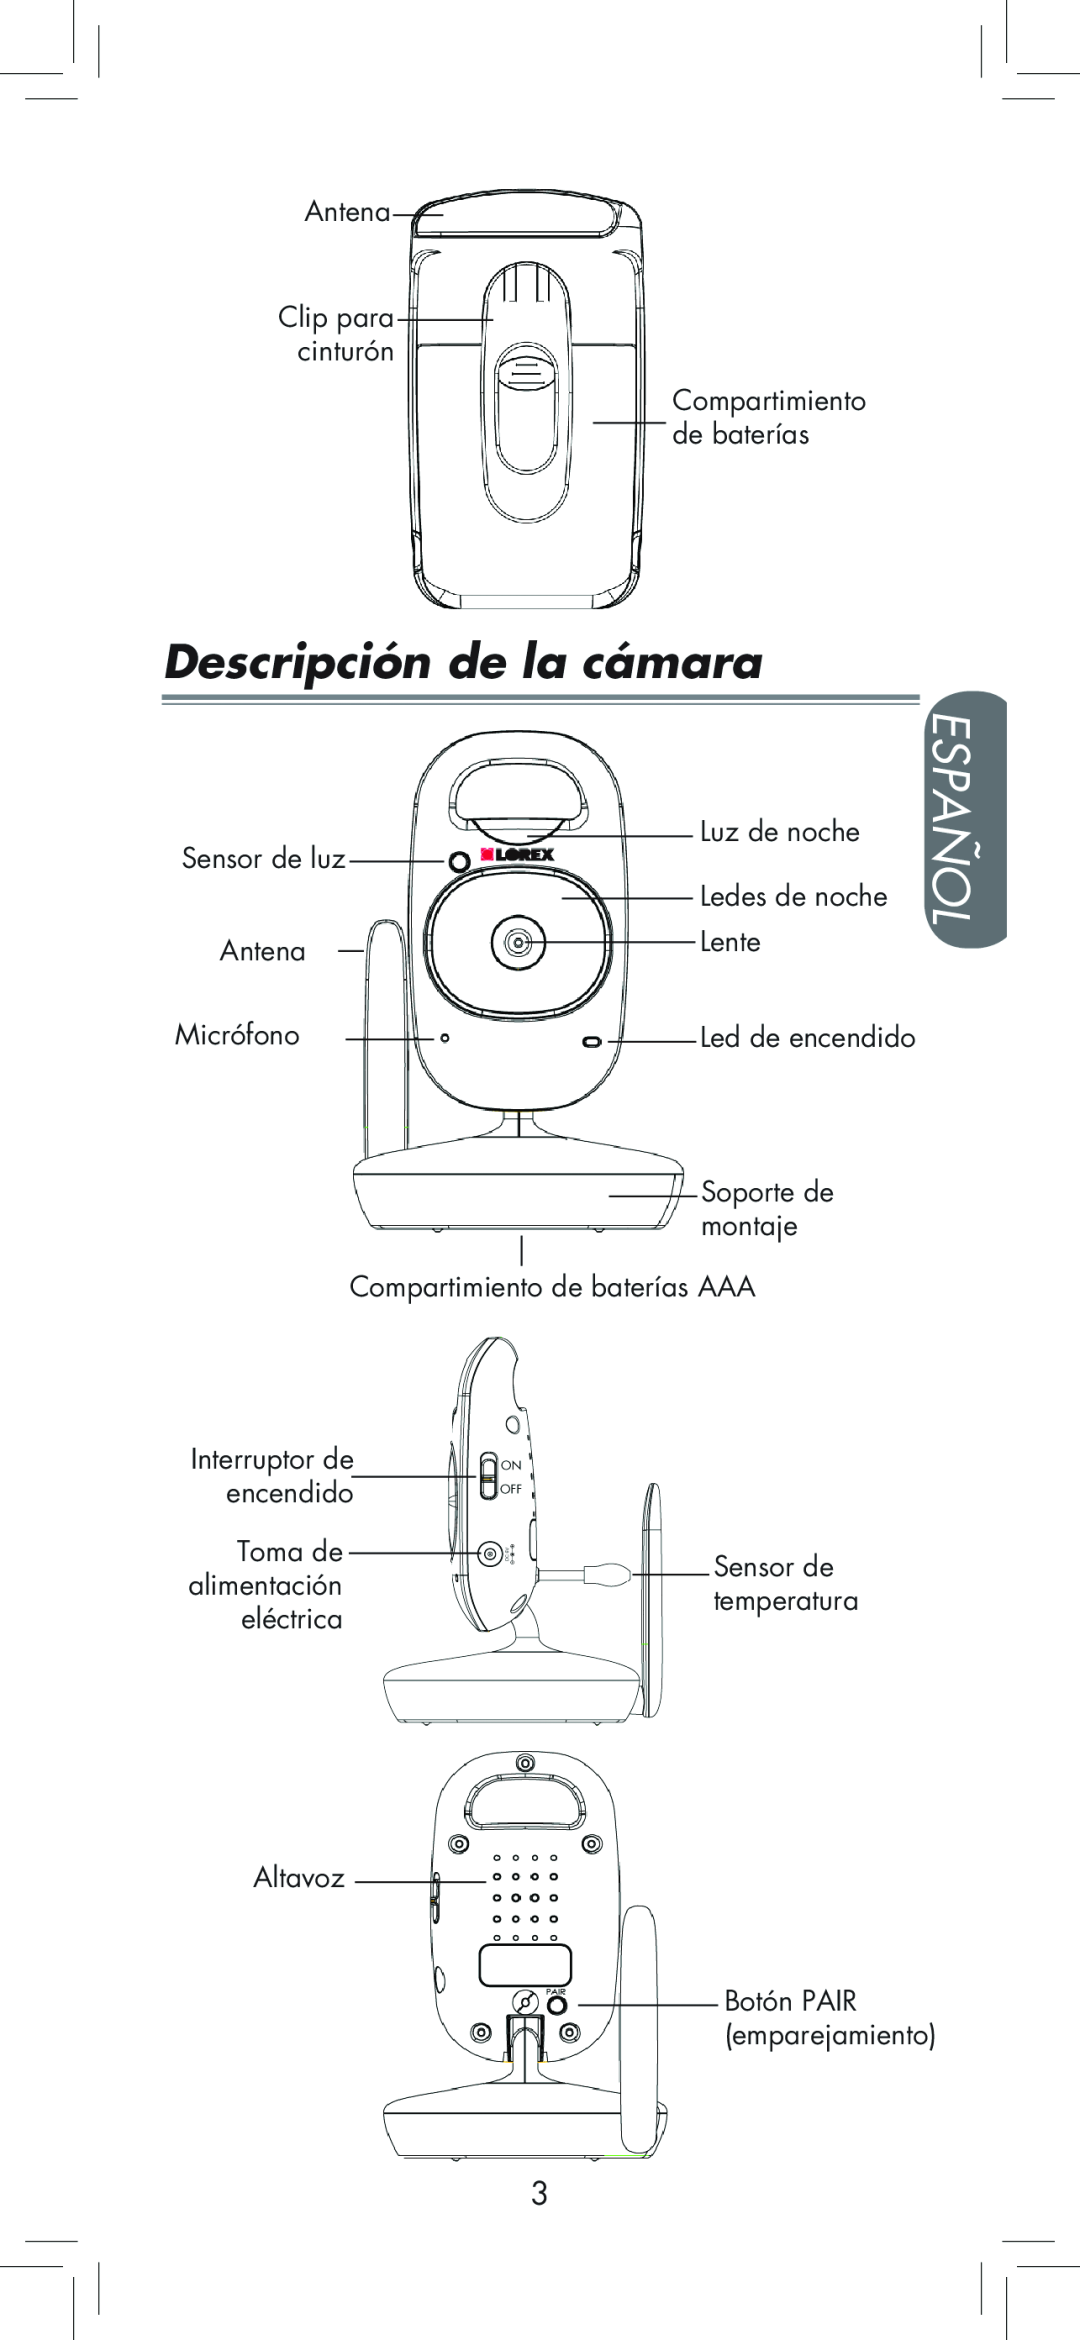 LOREX Technology BB2411 manual Descripción de la cámara, Español 